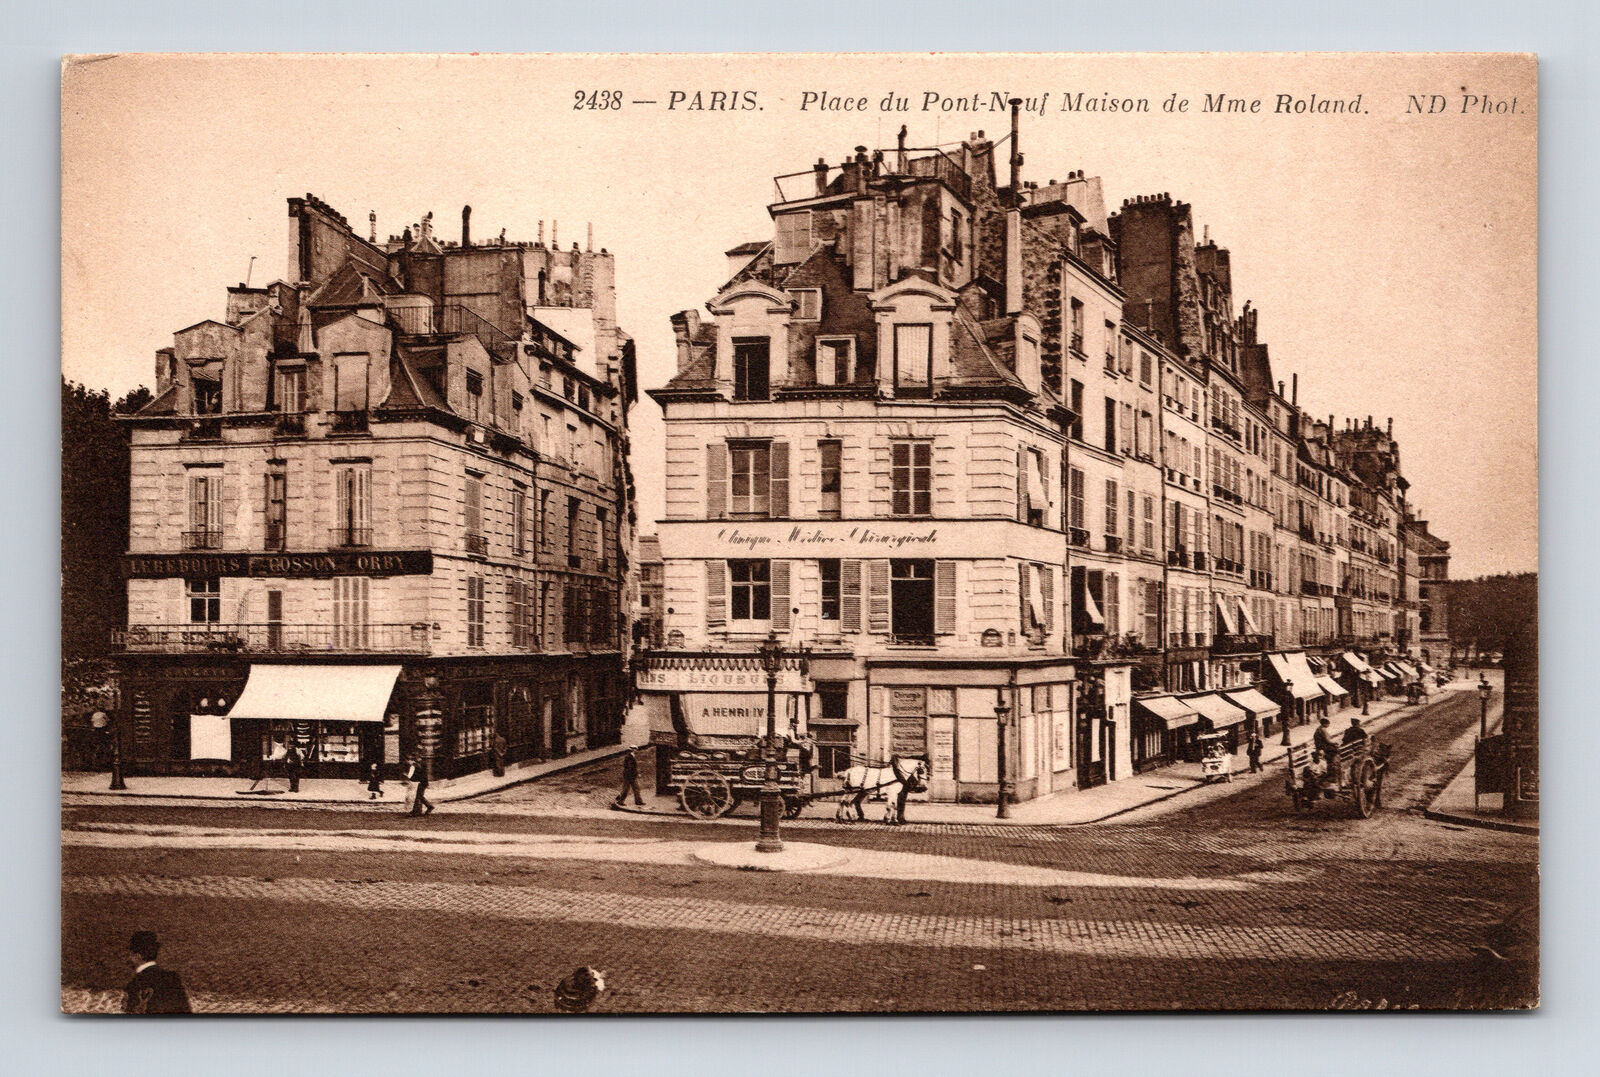 Place du Pont Neuf Henry IV Taverne Liqueurs Paris France NEURDEIN 2438 Postcard